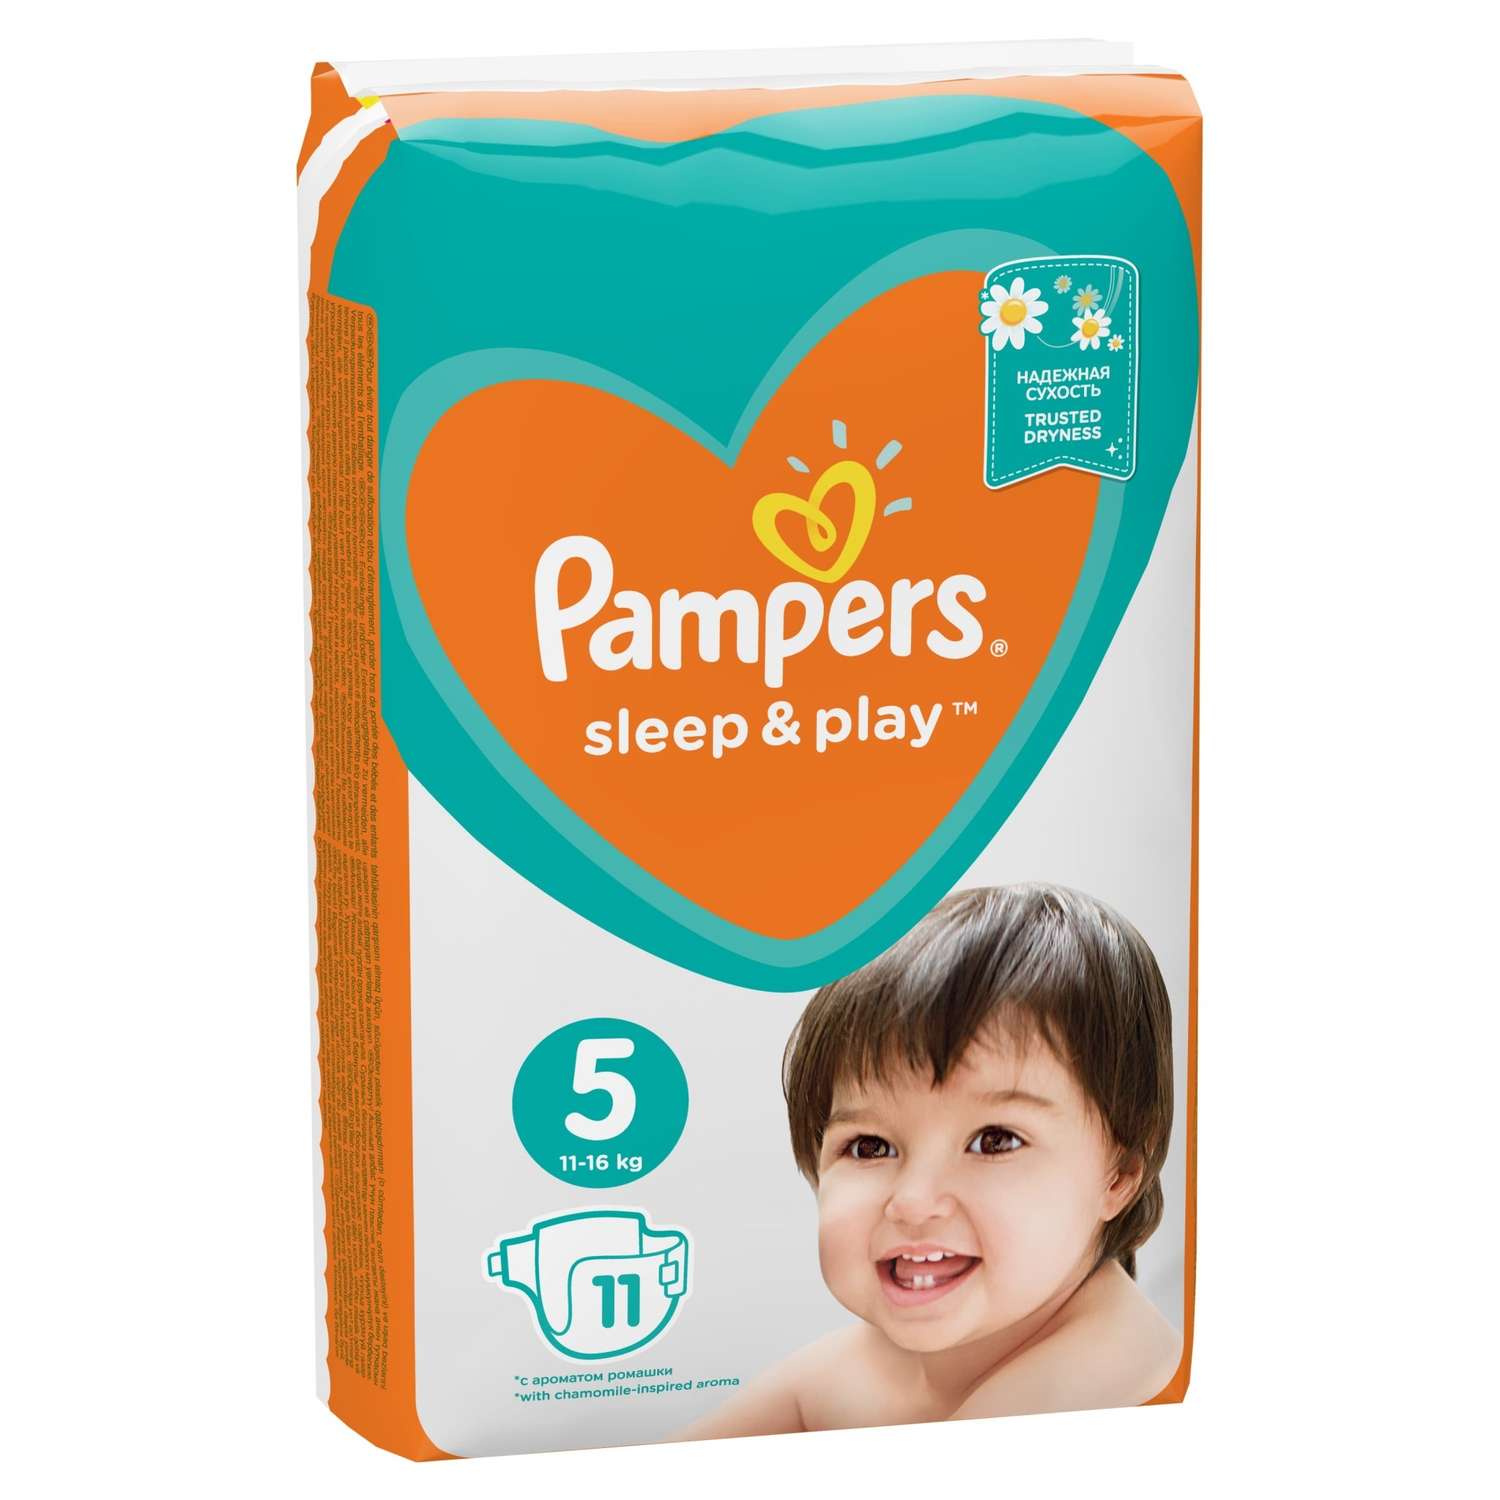 Подгузники Pampers Sleep and Play 5 11-16кг 11шт - фото 3